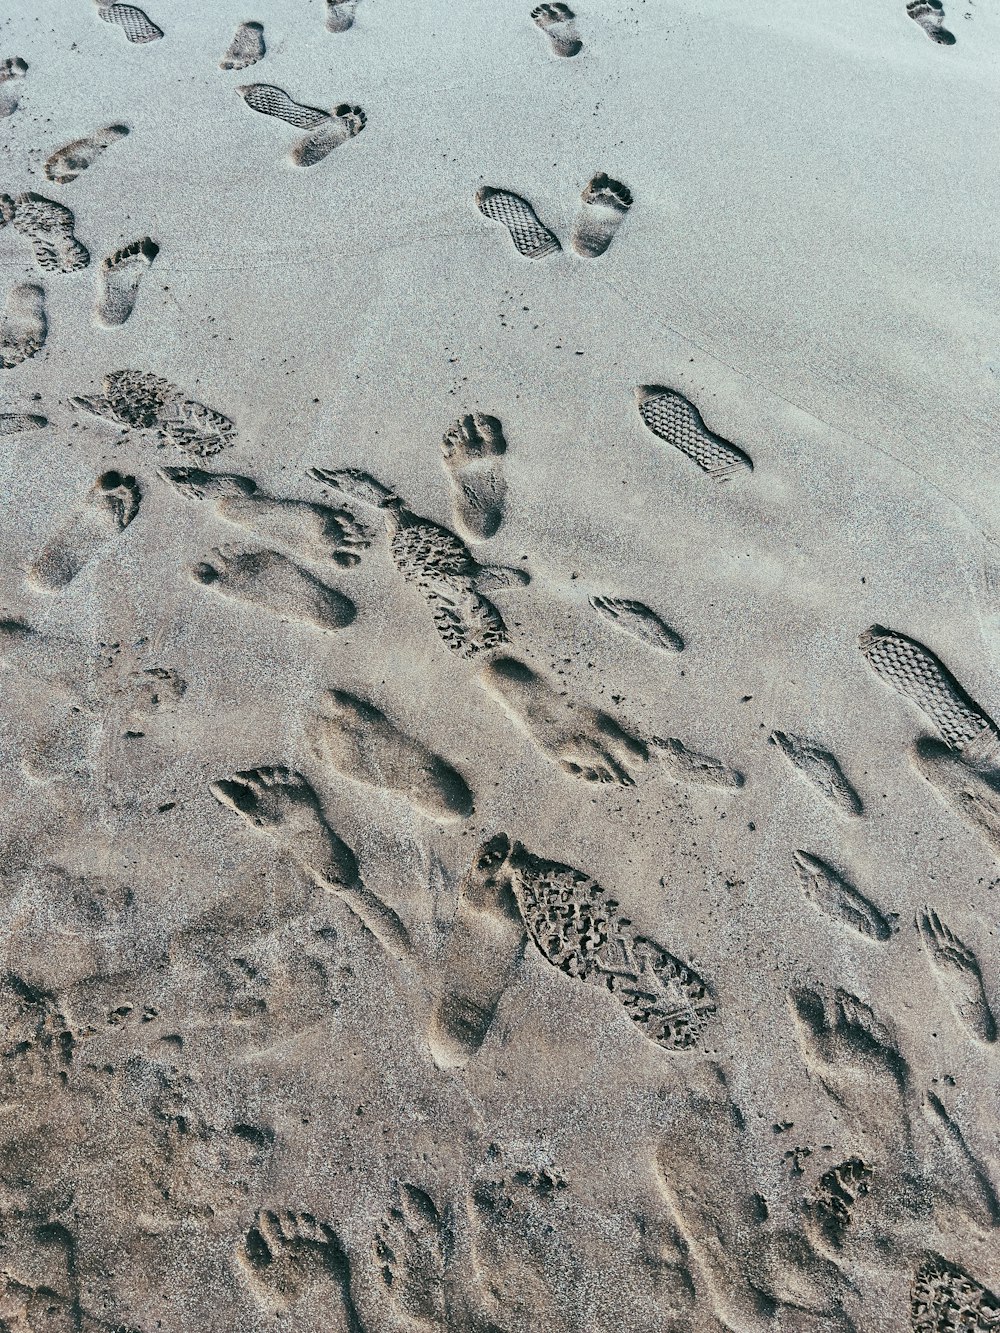 Fußabdrücke im Sand eines Strandes in der Nähe des Ozeans